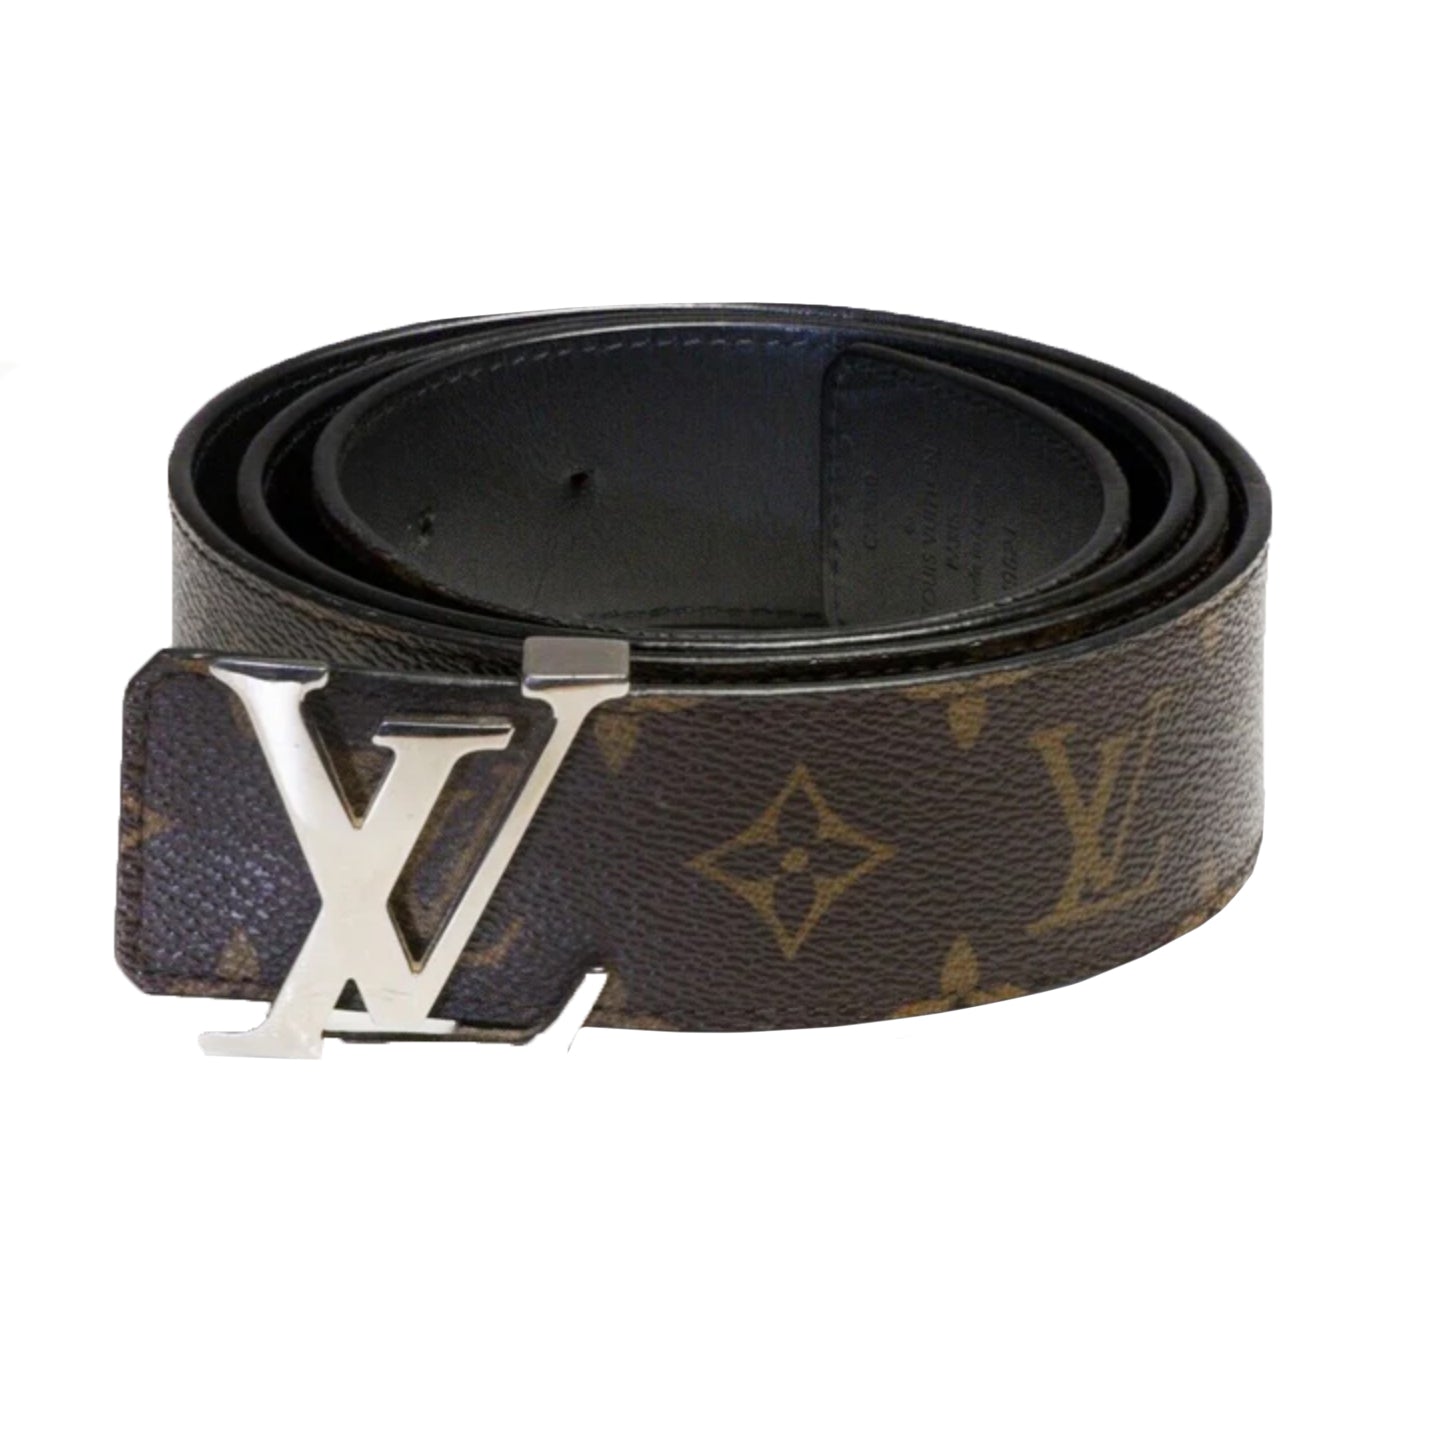 Louis Vuitton - LV Edge 25mm Reversible Belt - Monogram Canvas & Leather - Beige - Size: 70 cm - Luxury